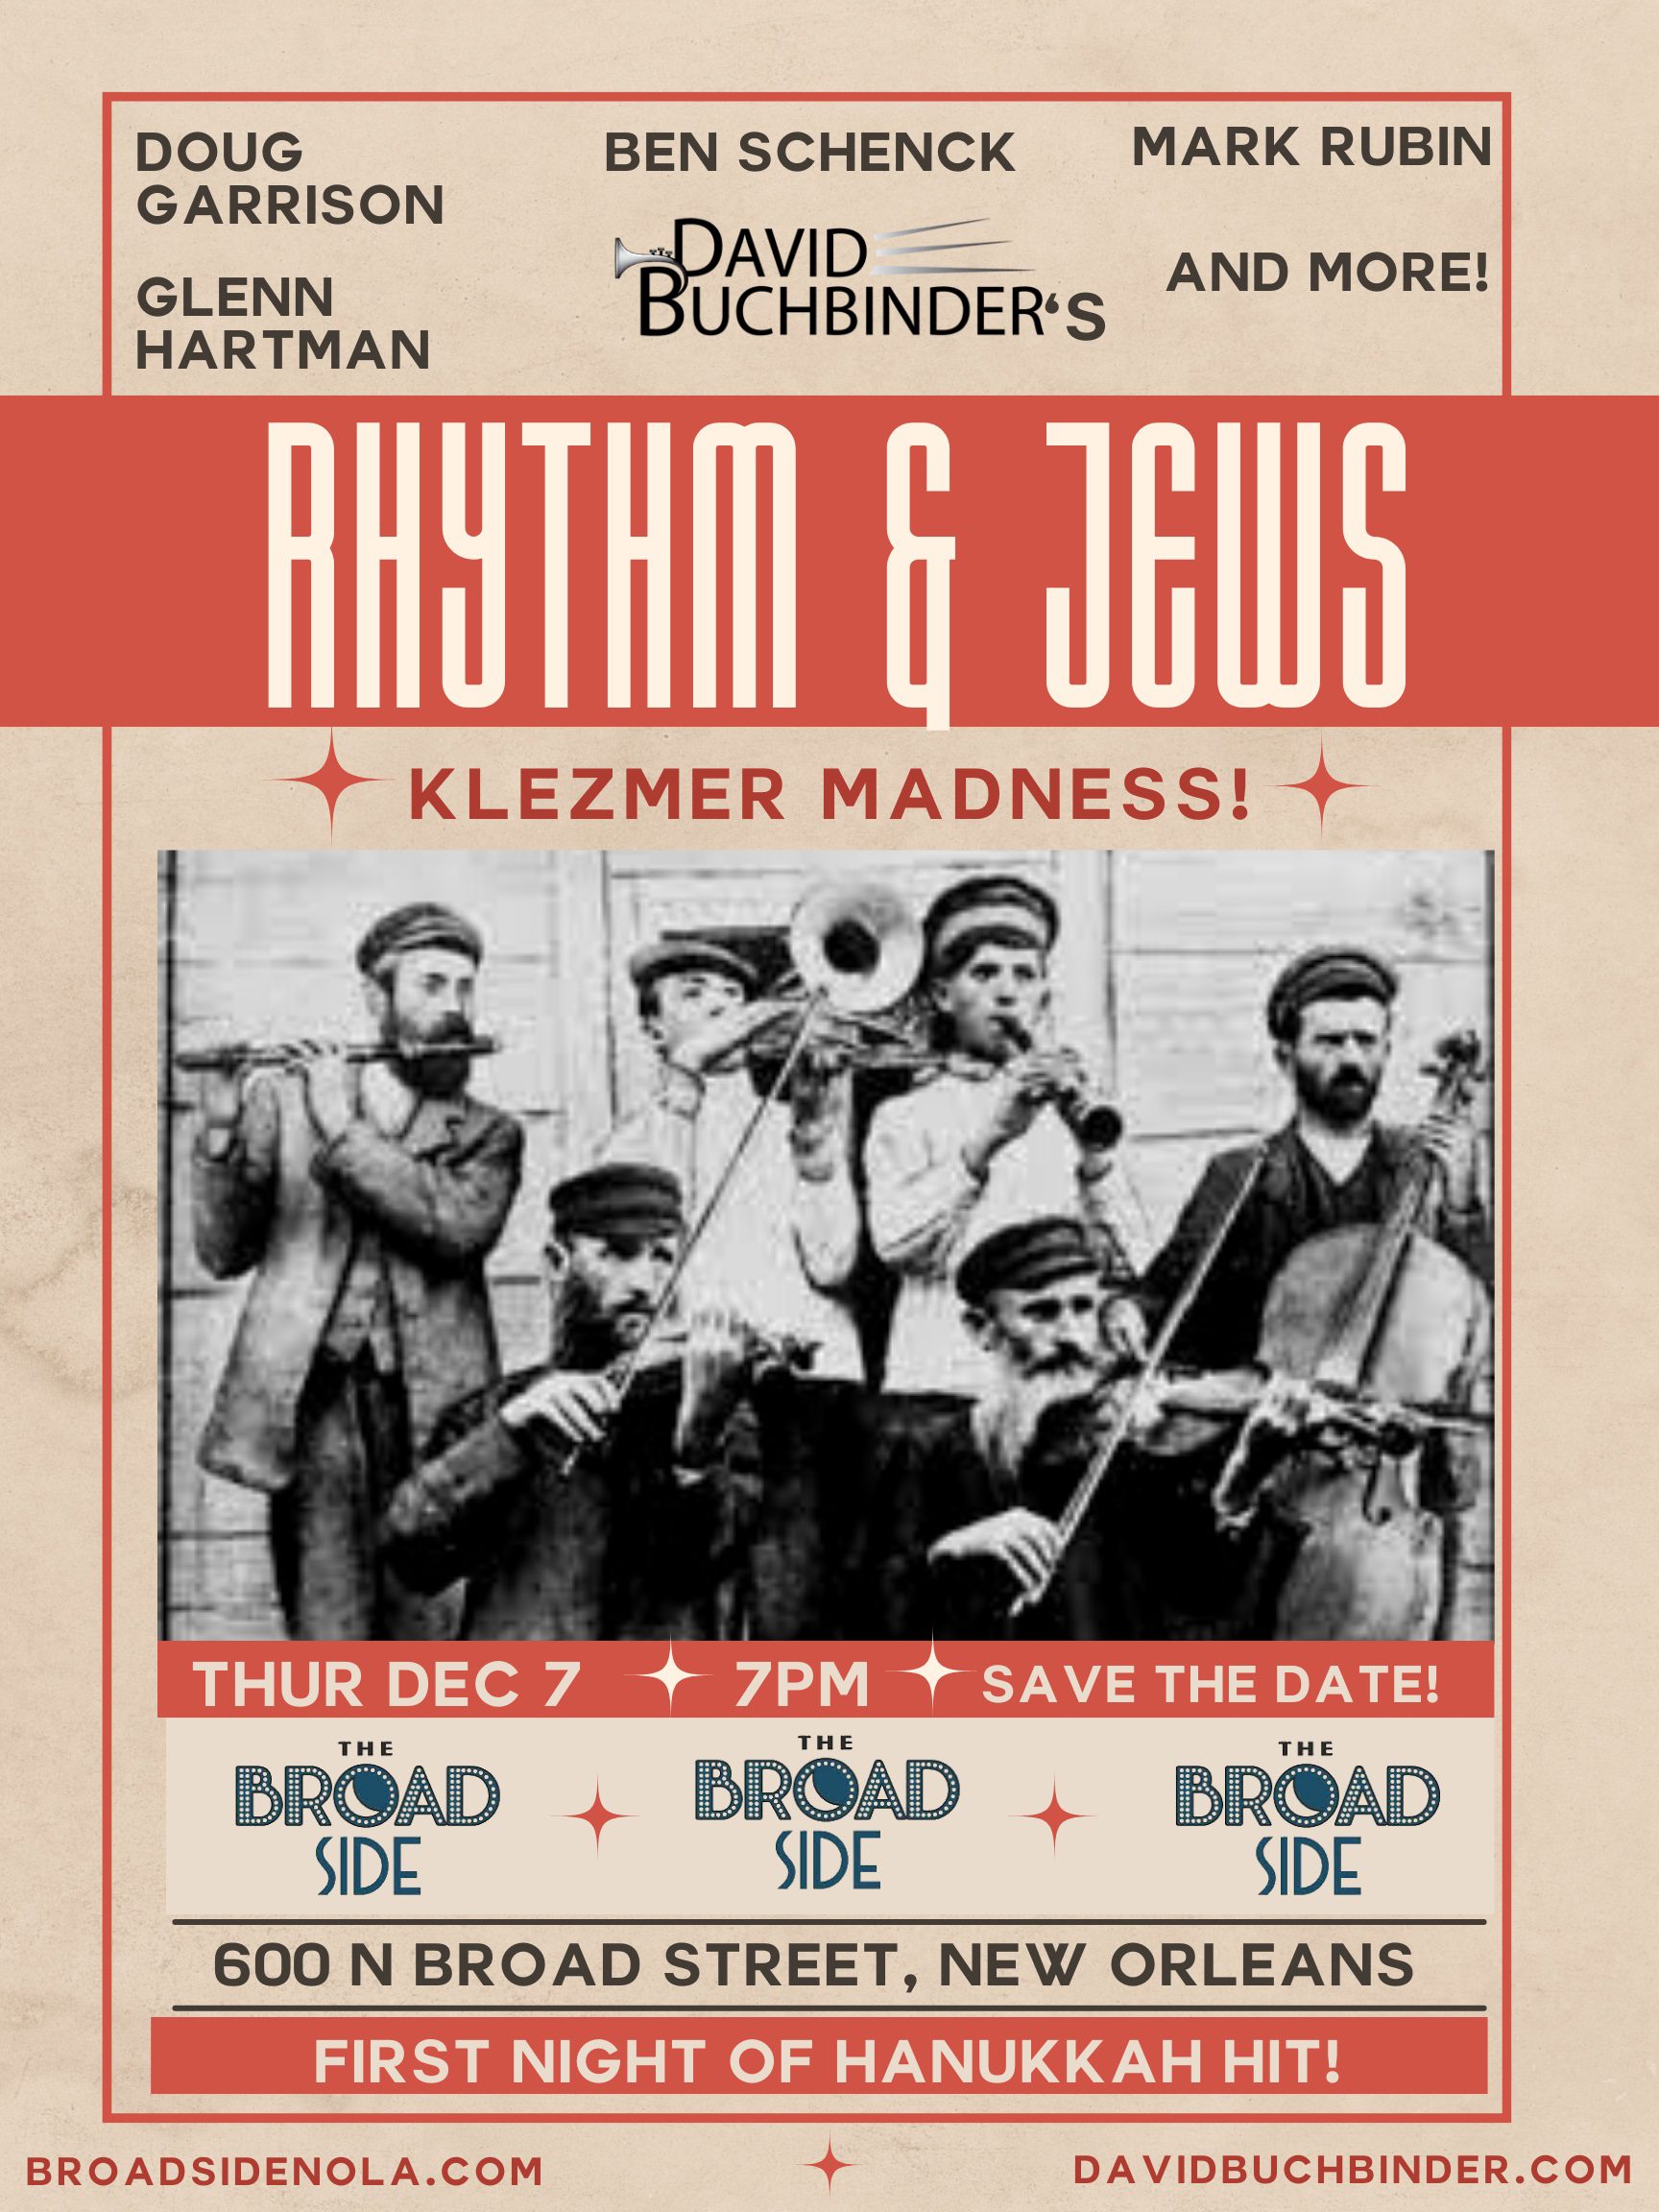 dB’s Rhythm & Jews Hanukkah Hit!